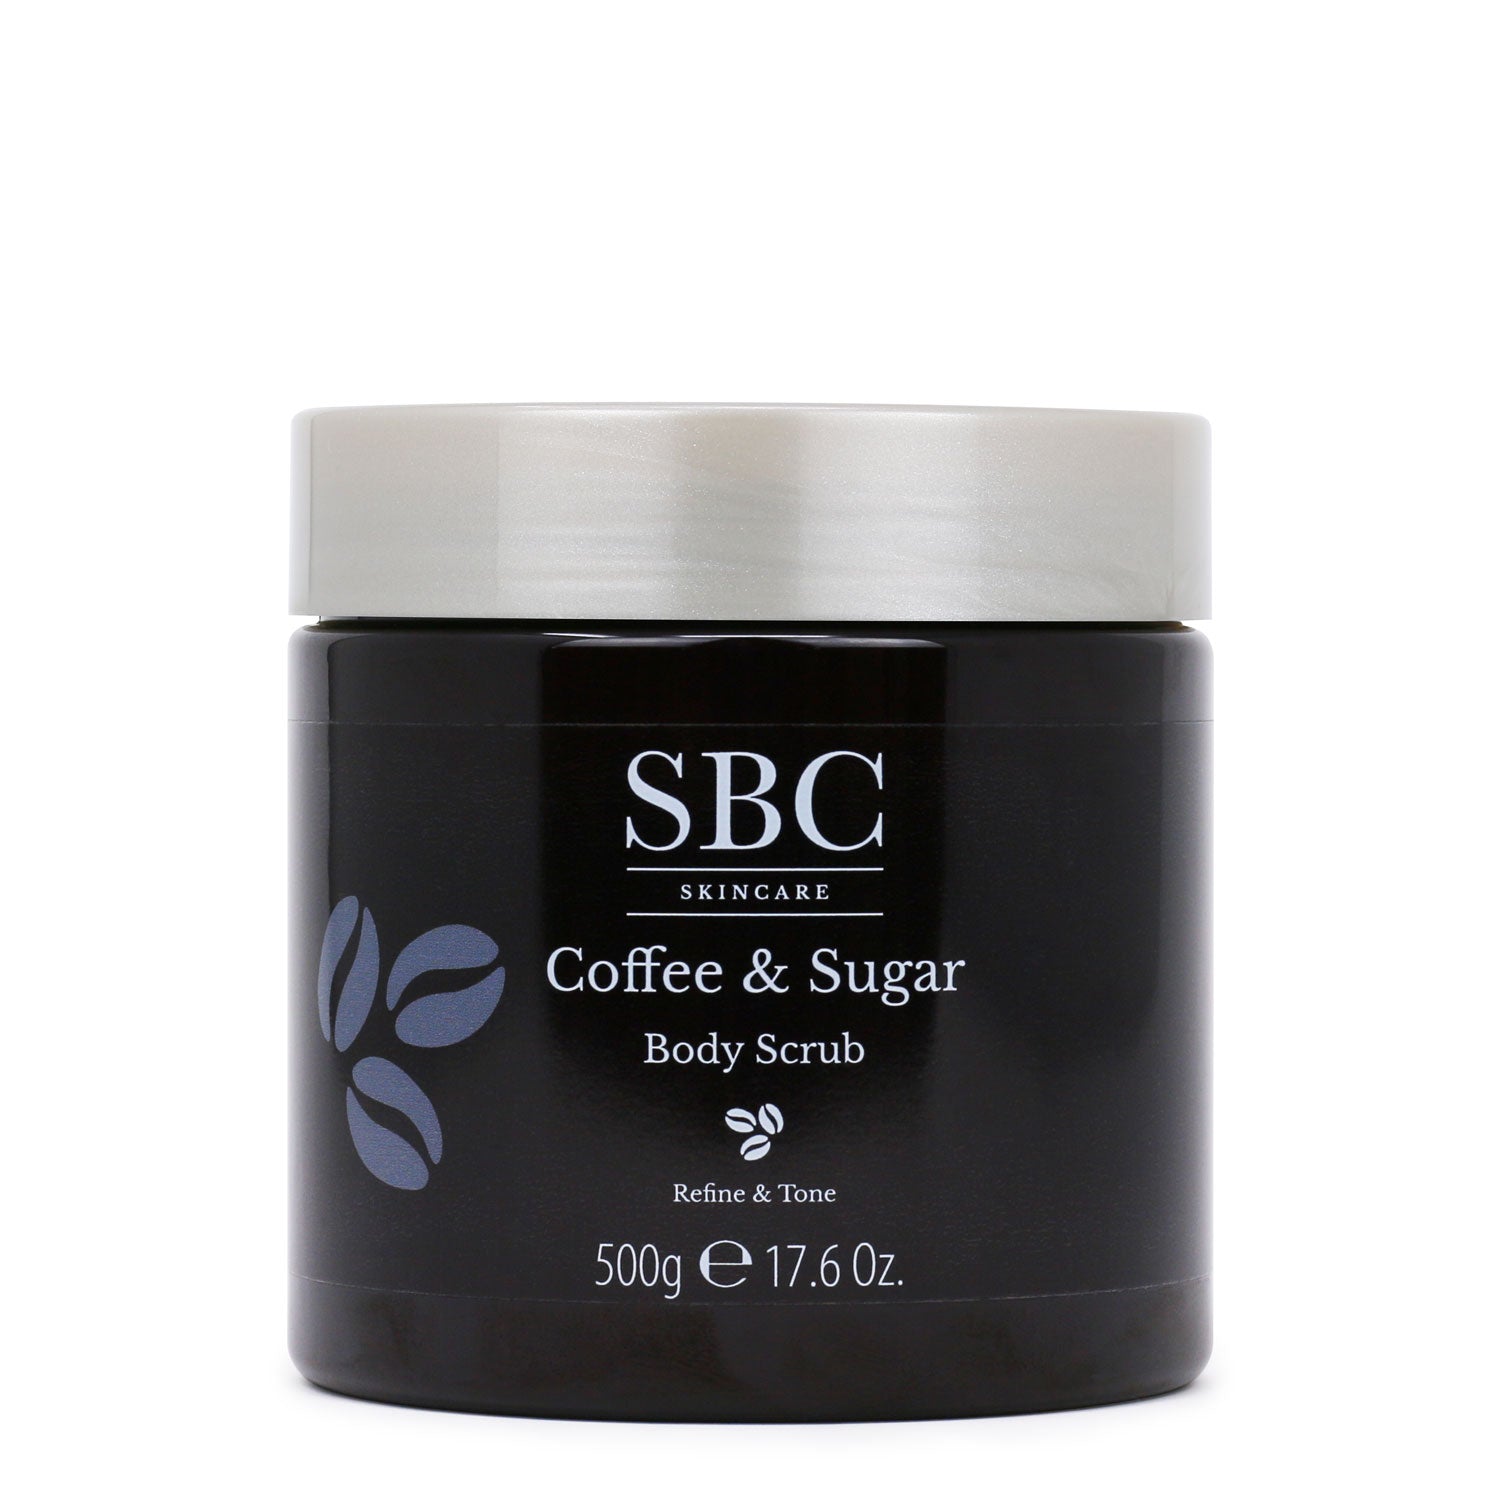 500g Coffee & Sugar Body Scrub on a white background